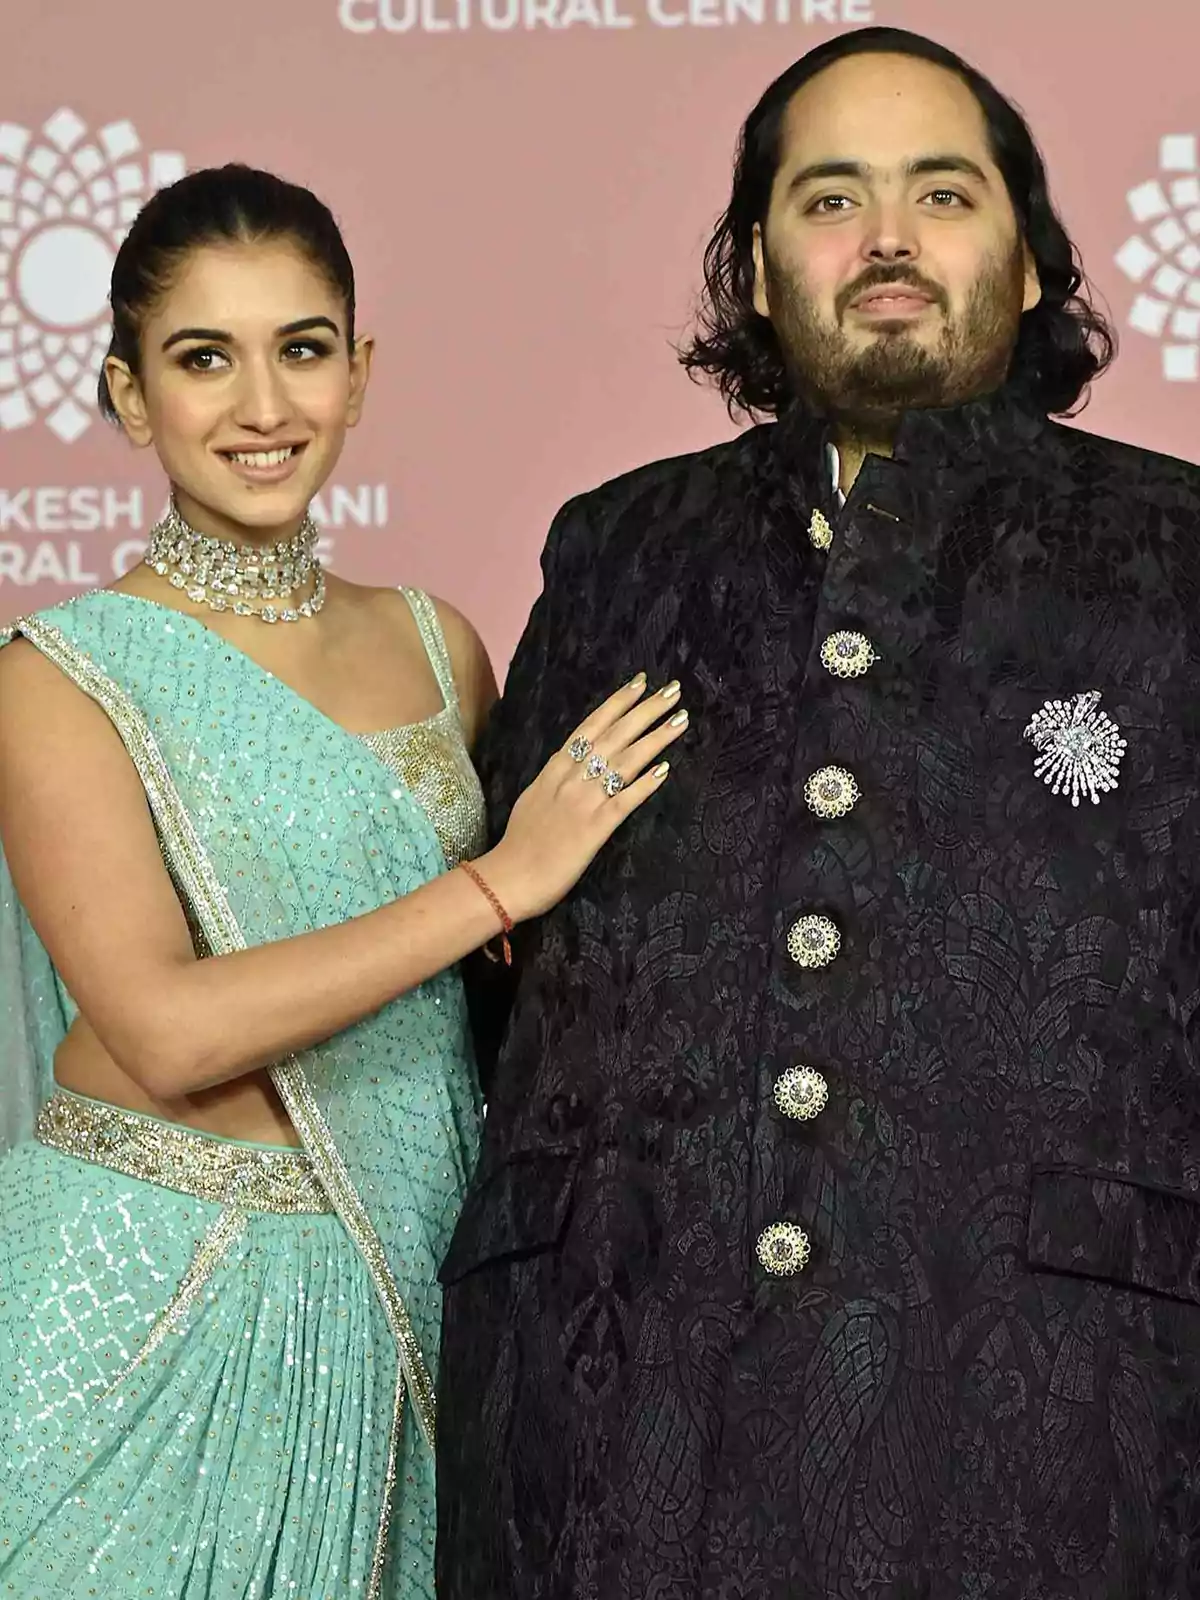 Una pareja posando en un evento formal con trajes tradicionales.